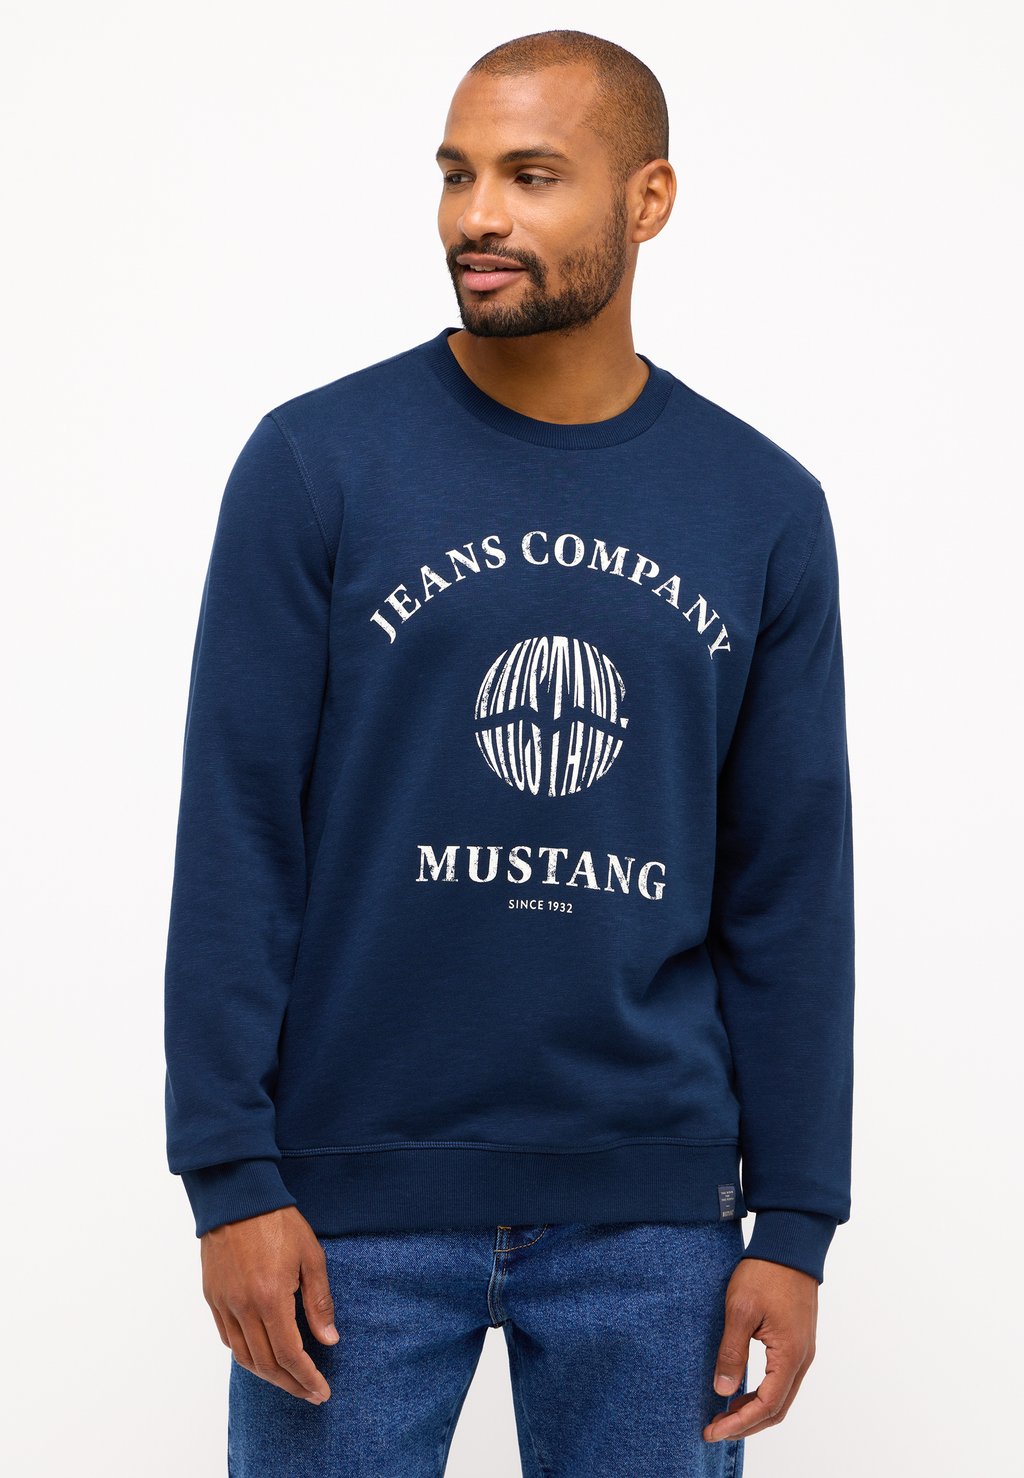 Вязаный свитер Mustang, цвет blau